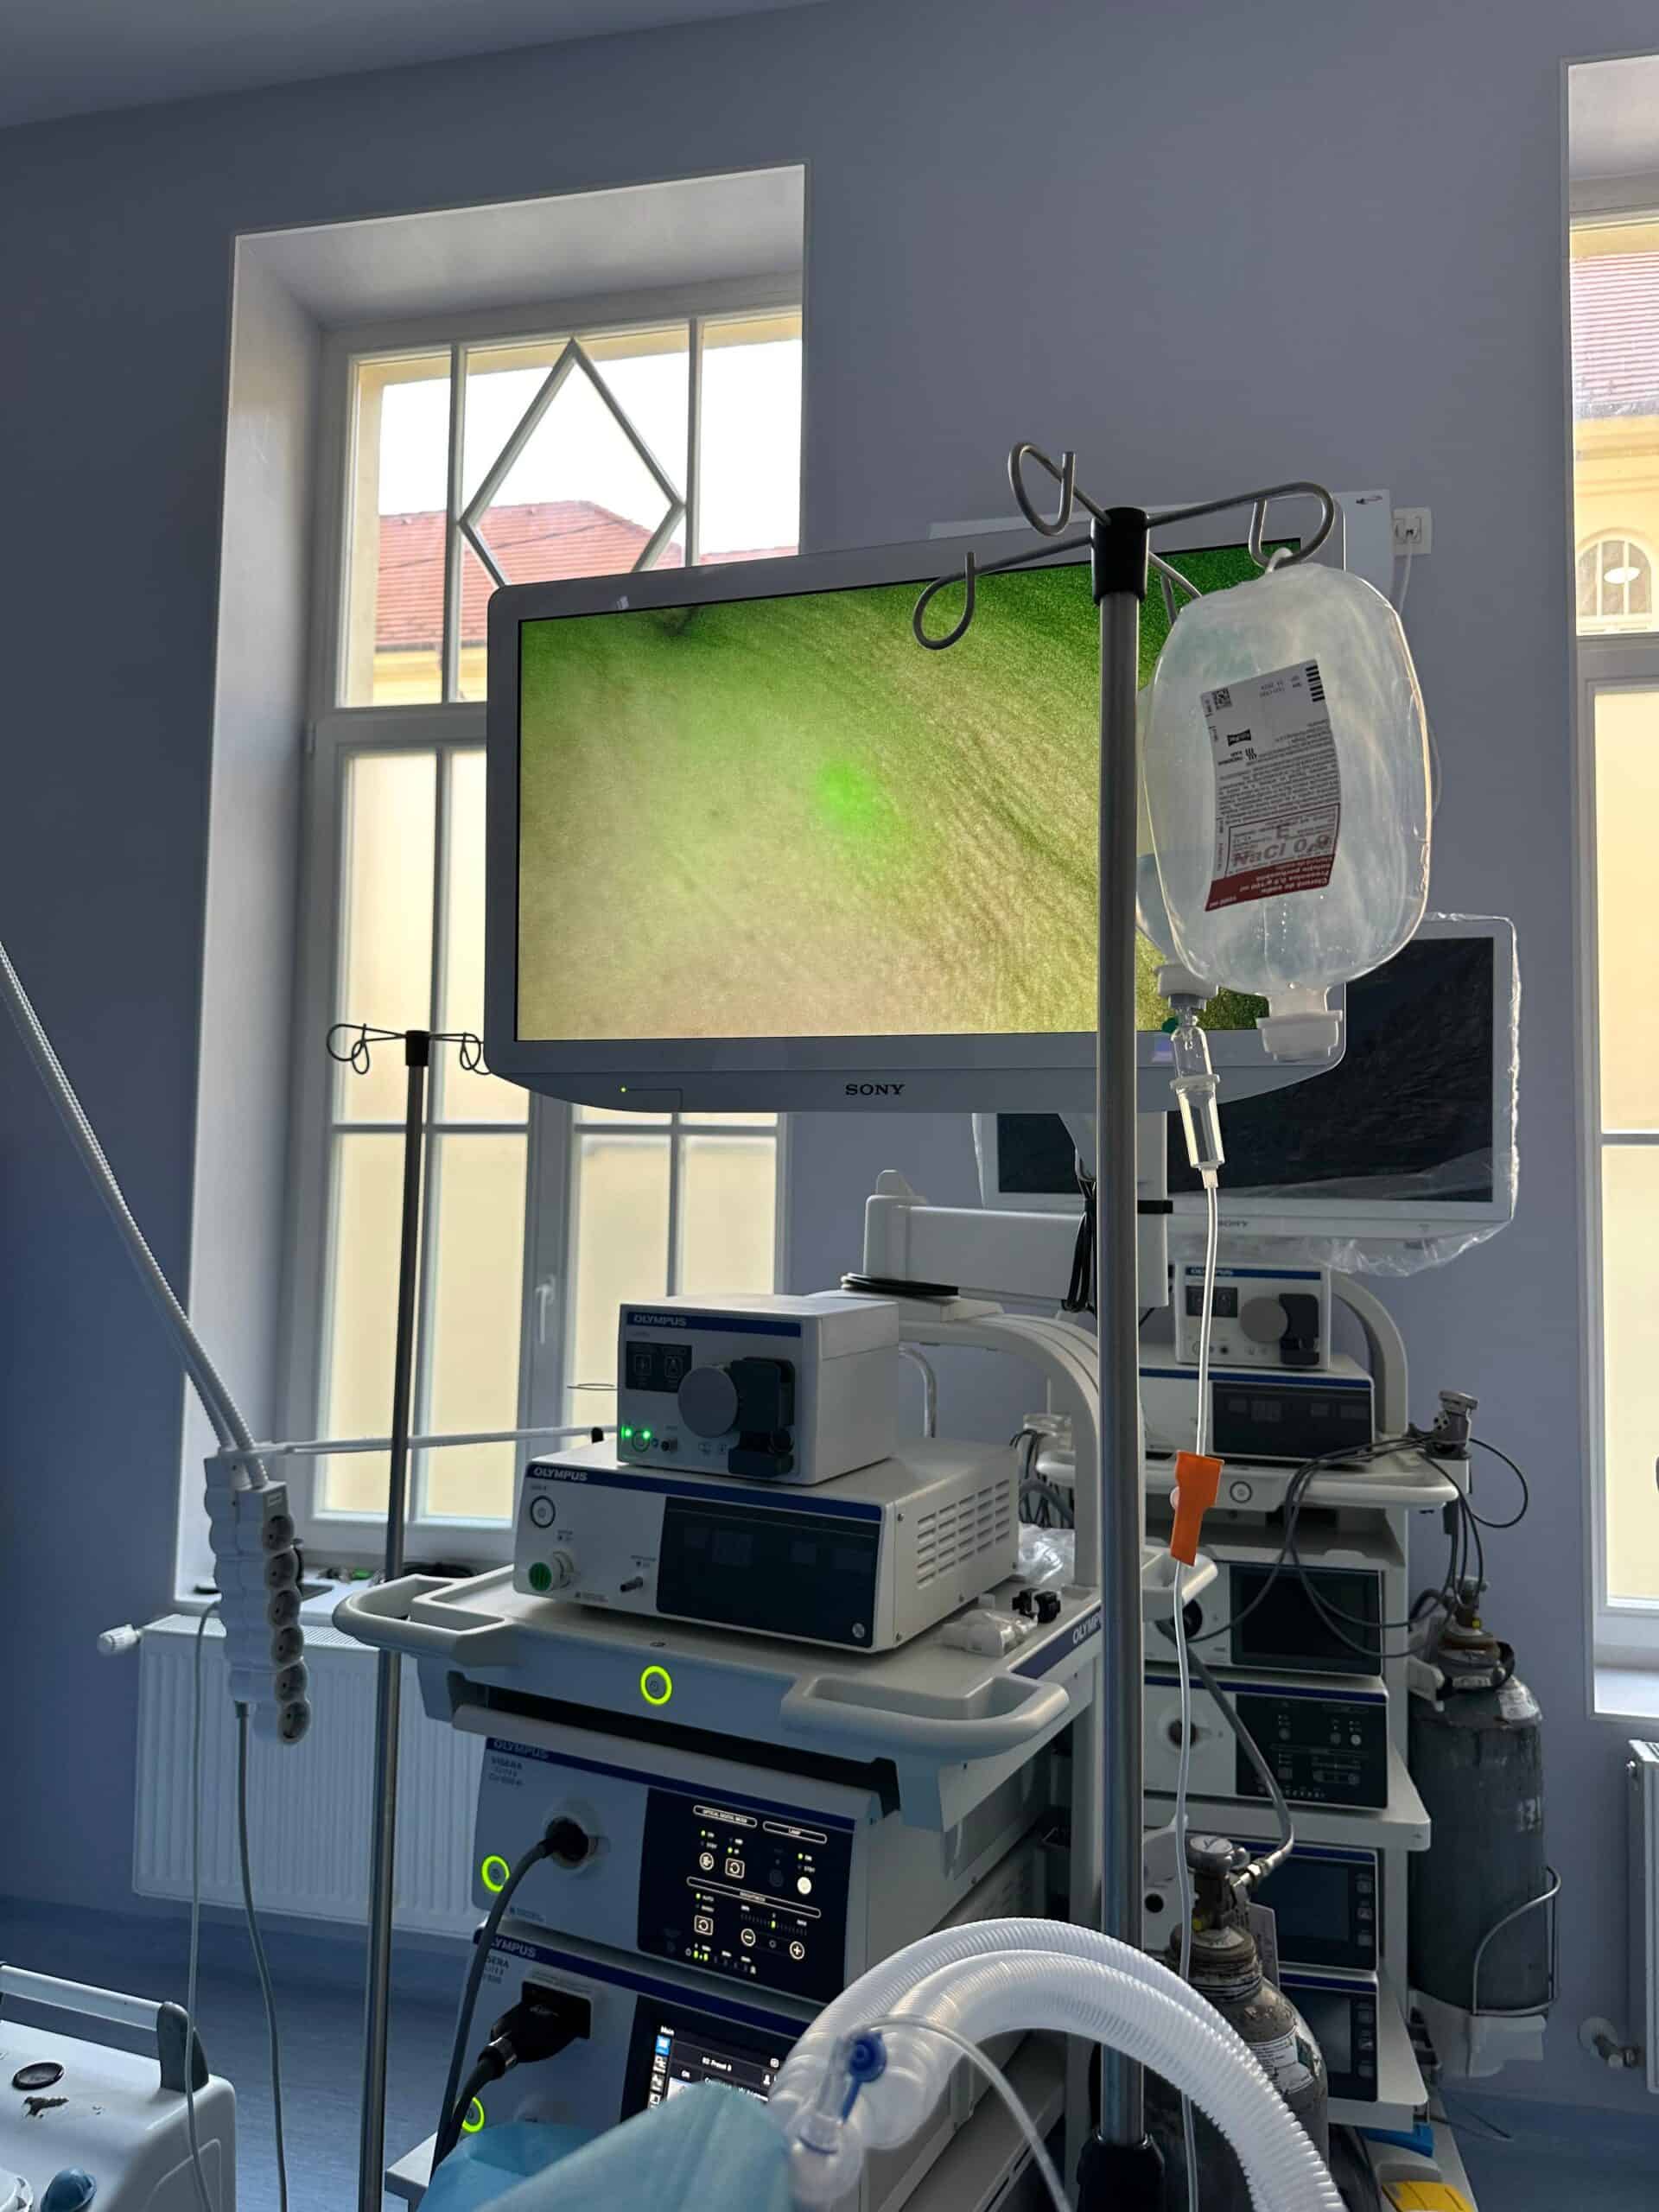 intervenții minim invazive asupra cancerului de sân cu aparatură ultramodernă la spitalul județean sibiu